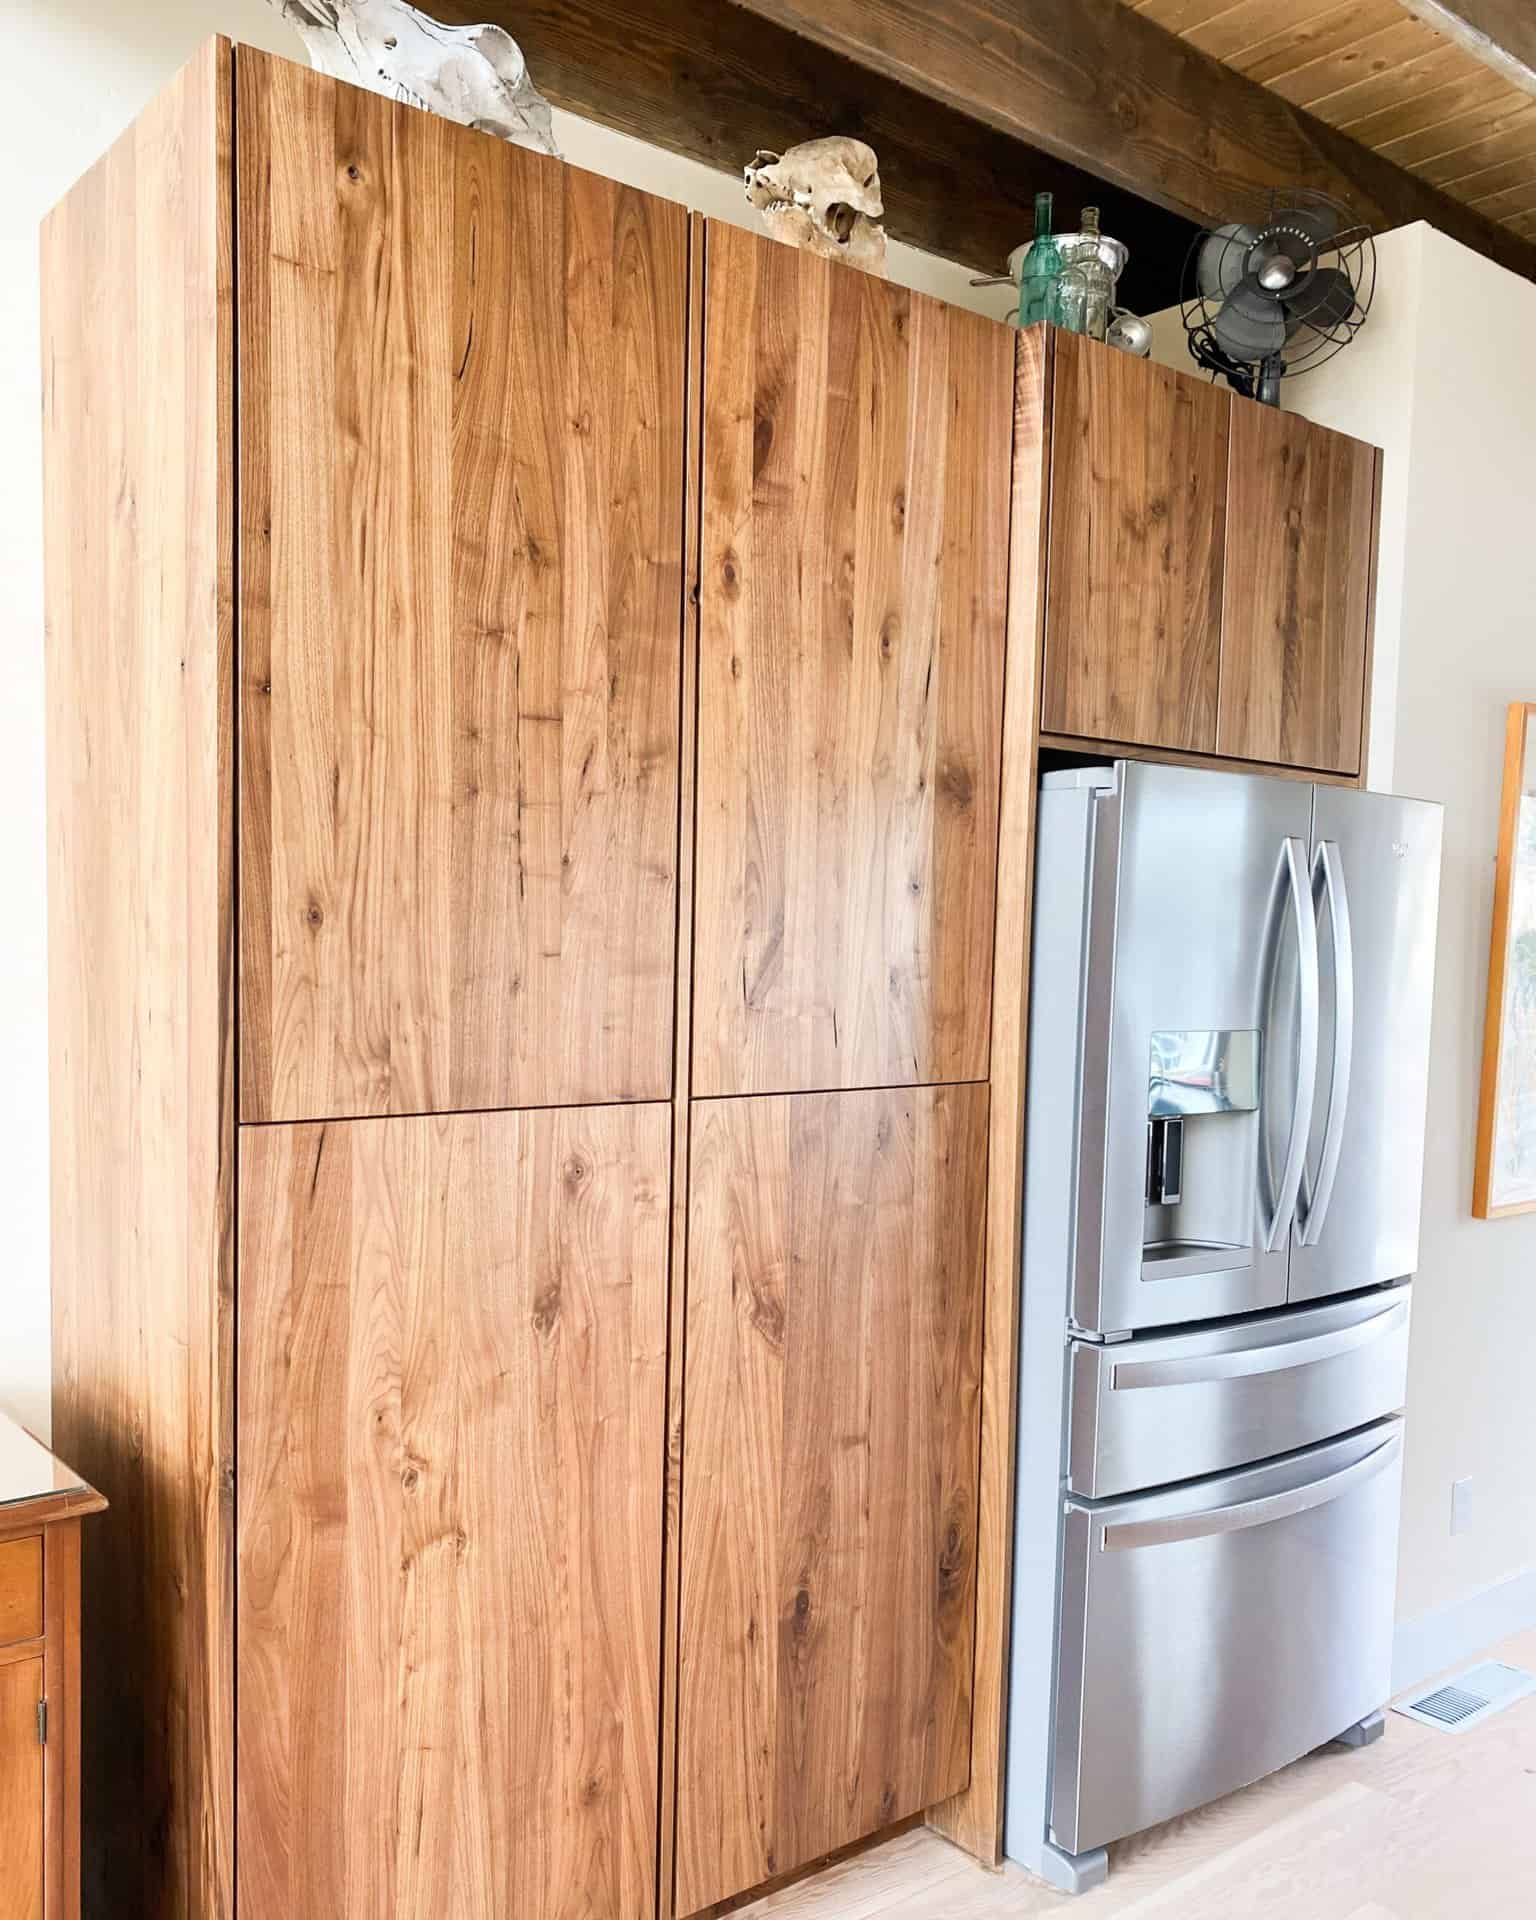 wooden cabinets around fridge